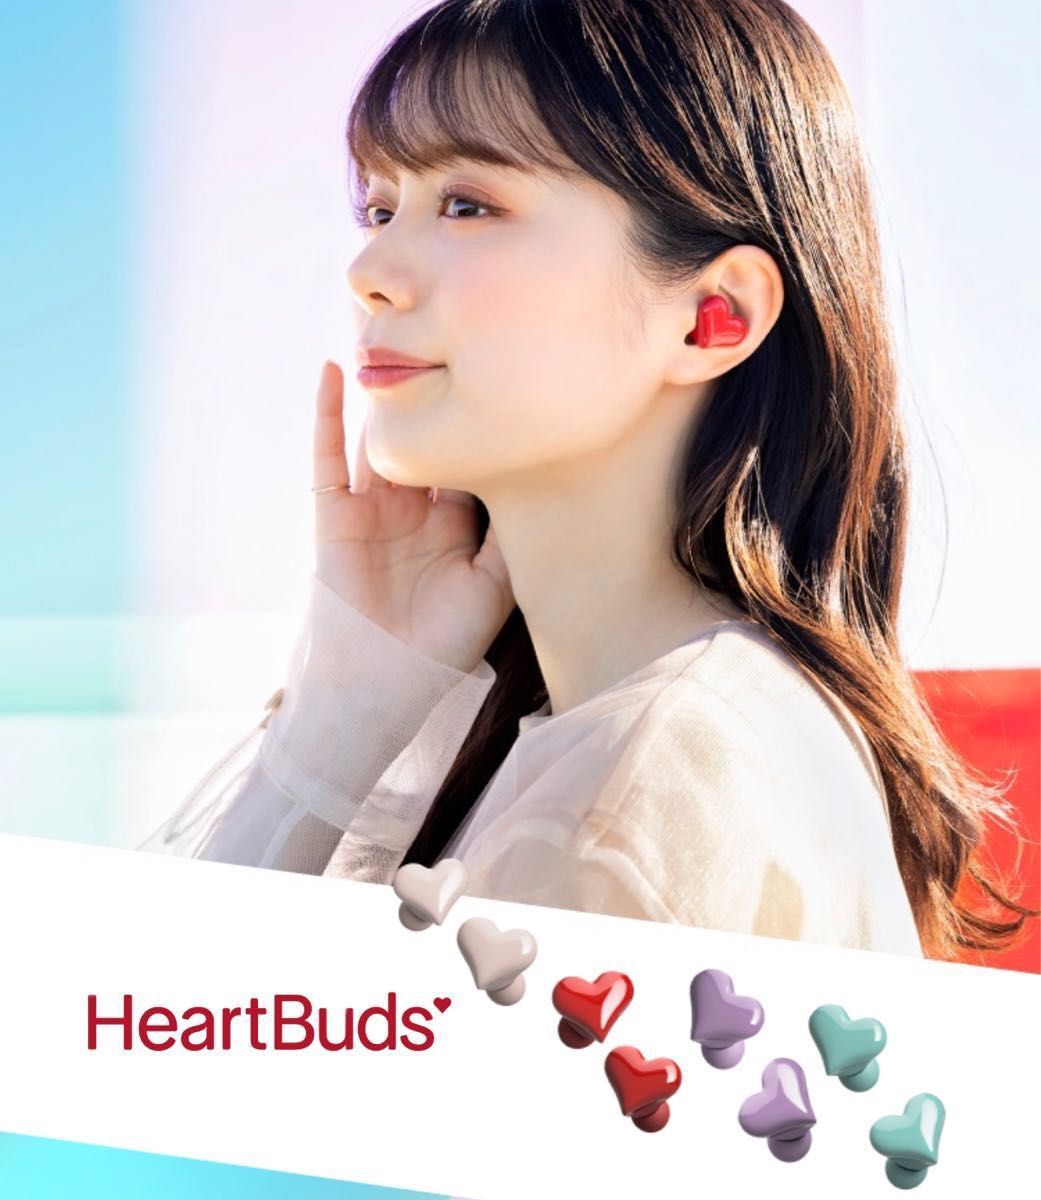 完全ワイヤレスイヤホン HeartBuds ハート型 イヤホン Bluetooth レッド 赤 箱付き 新品未開封